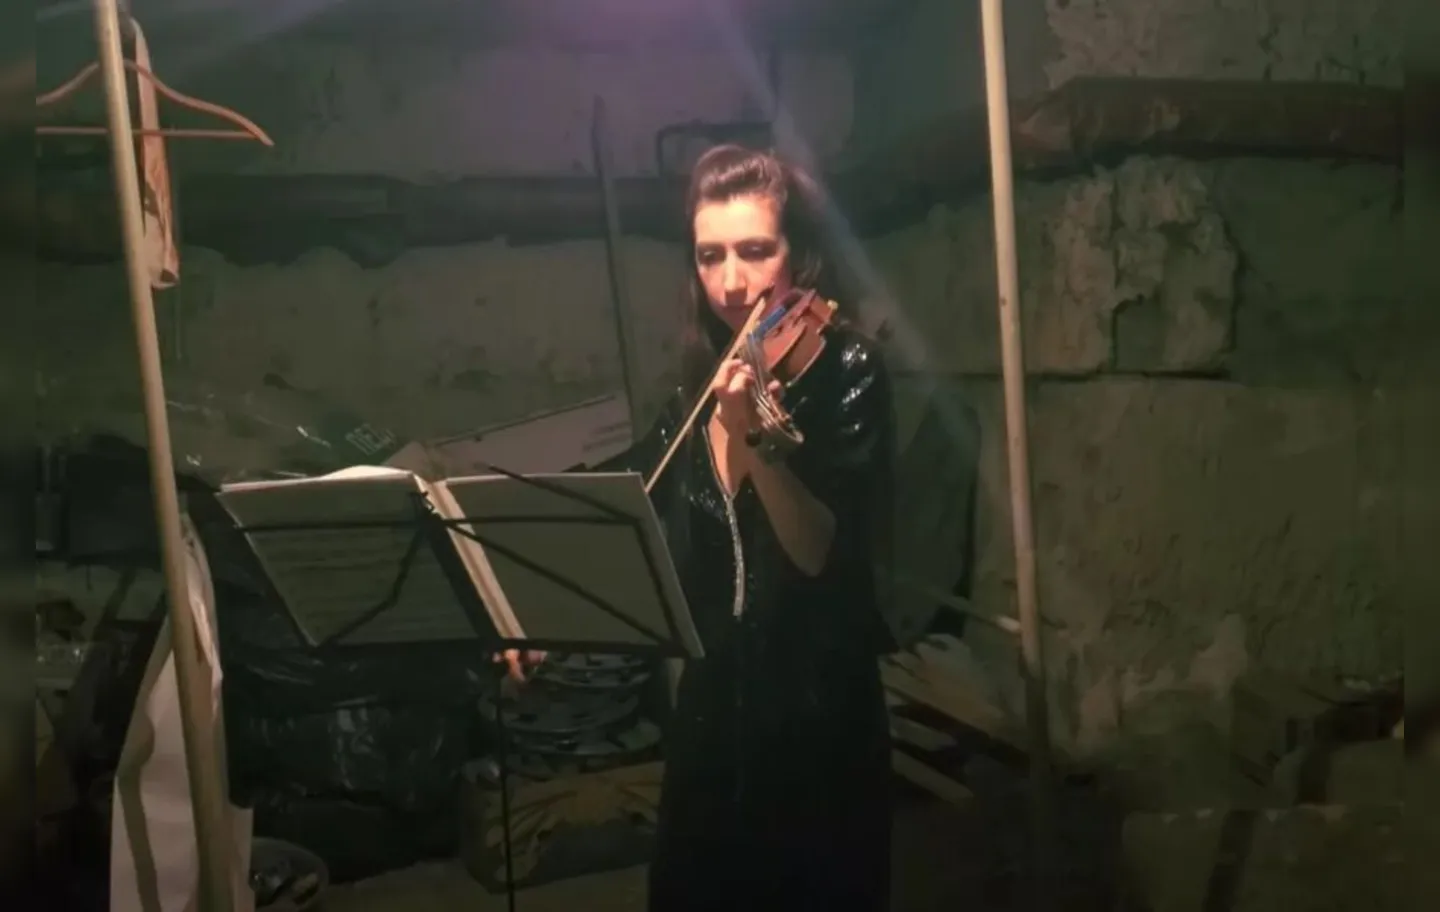 Desde o início da invasão russa, os violonistas tem demonstrado que seu pequeno instrumento musical é sua "arma de resistência"